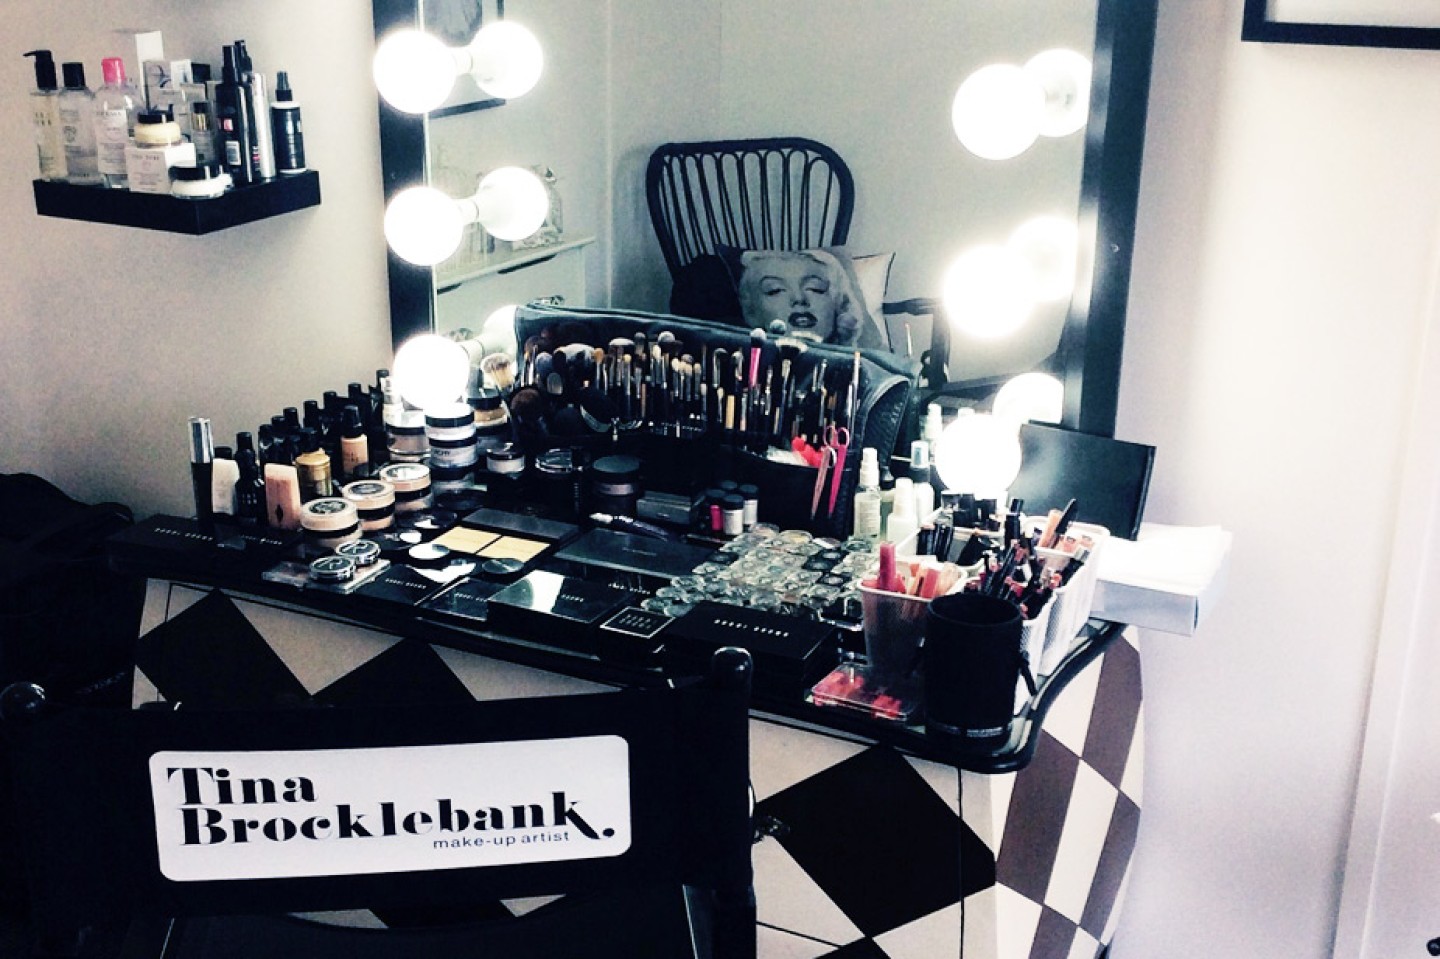 Tina Brocklebank Make-up artist studio.